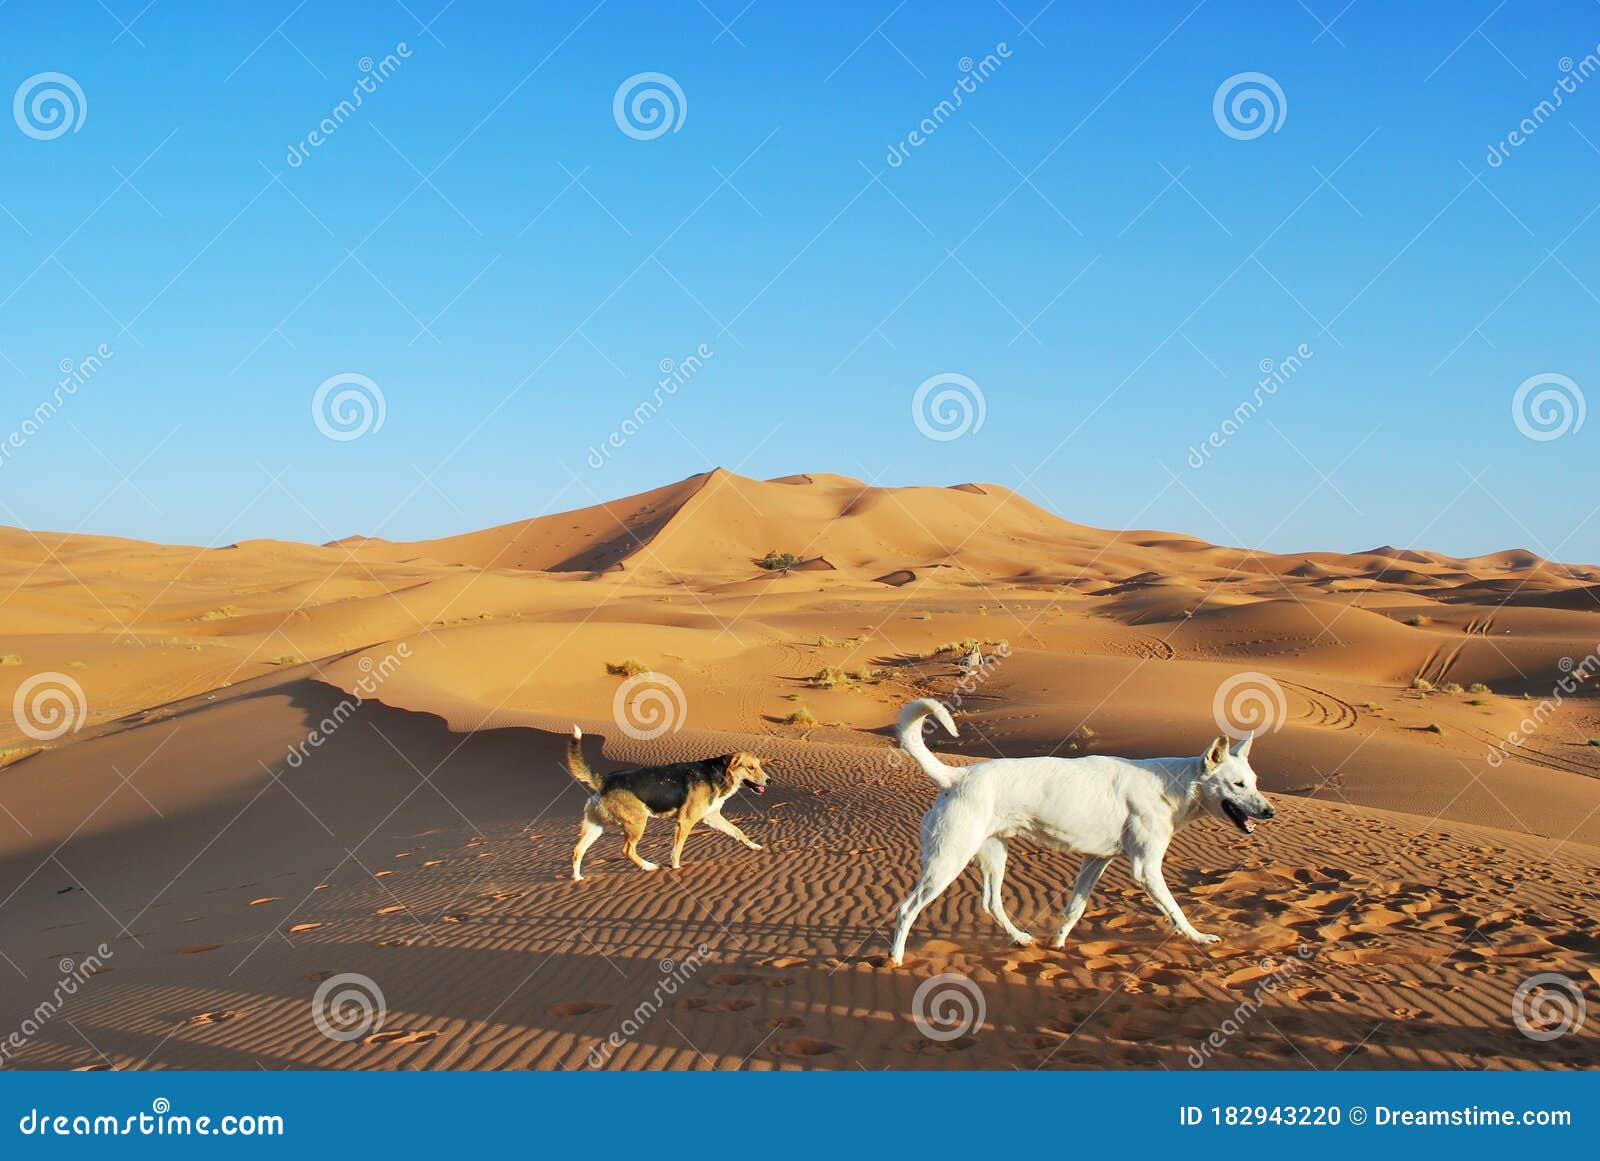 wild desert dogs in the sahara.